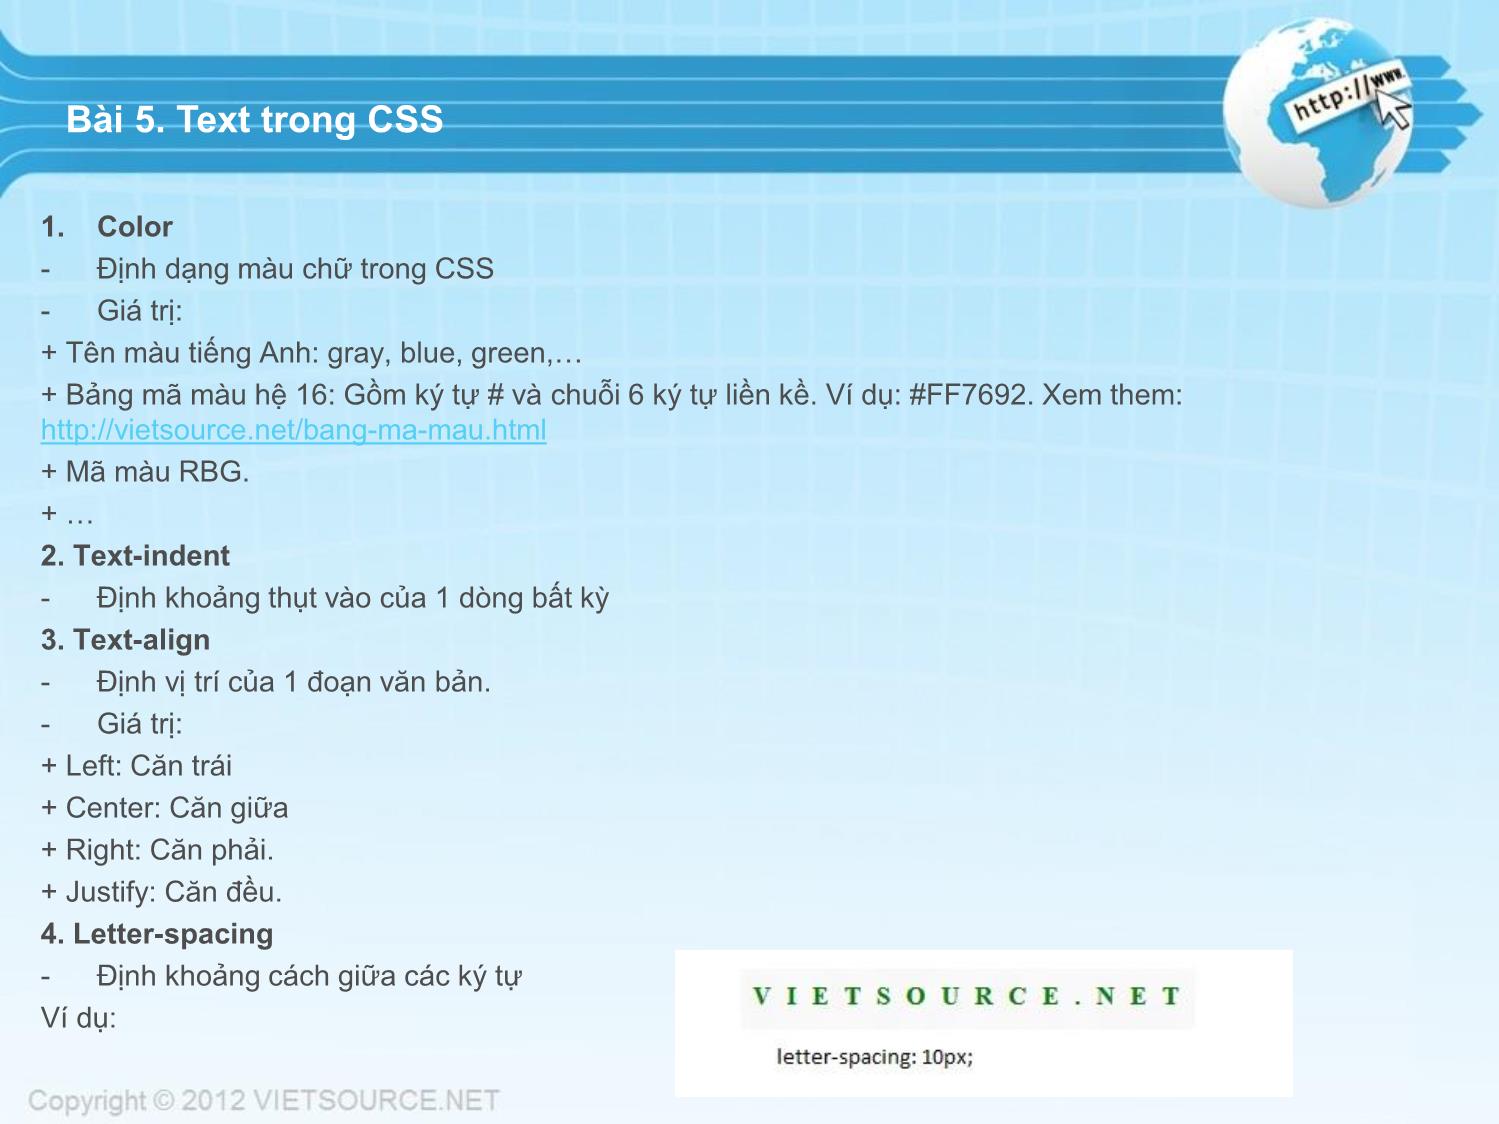 Bài giảng CSS - Bài 5: Text trong CSS trang 1